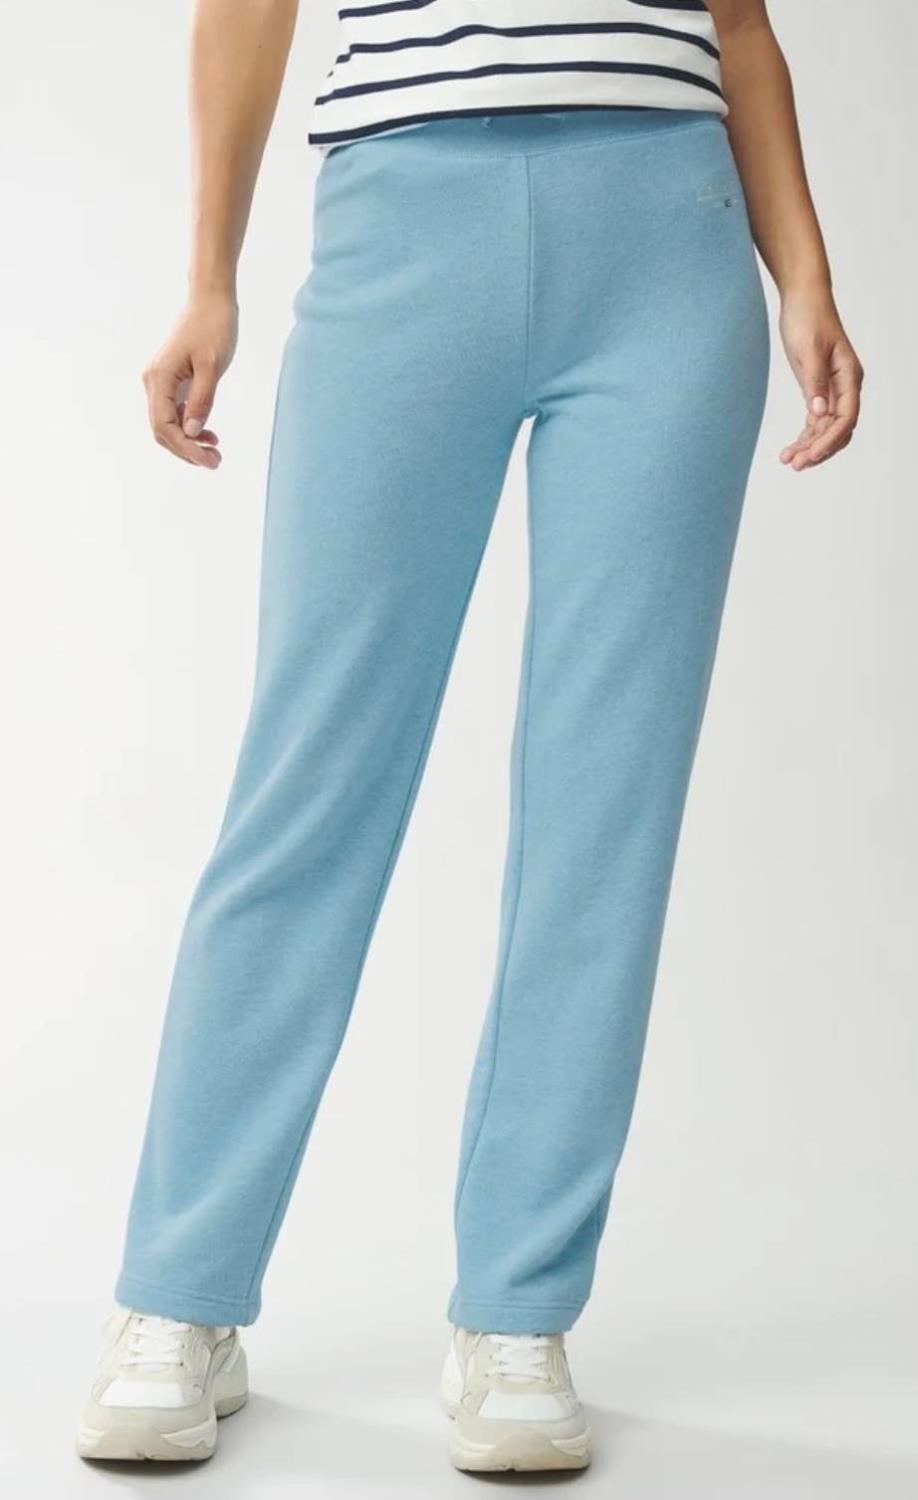 Jenna jersey pants - Light blue melange